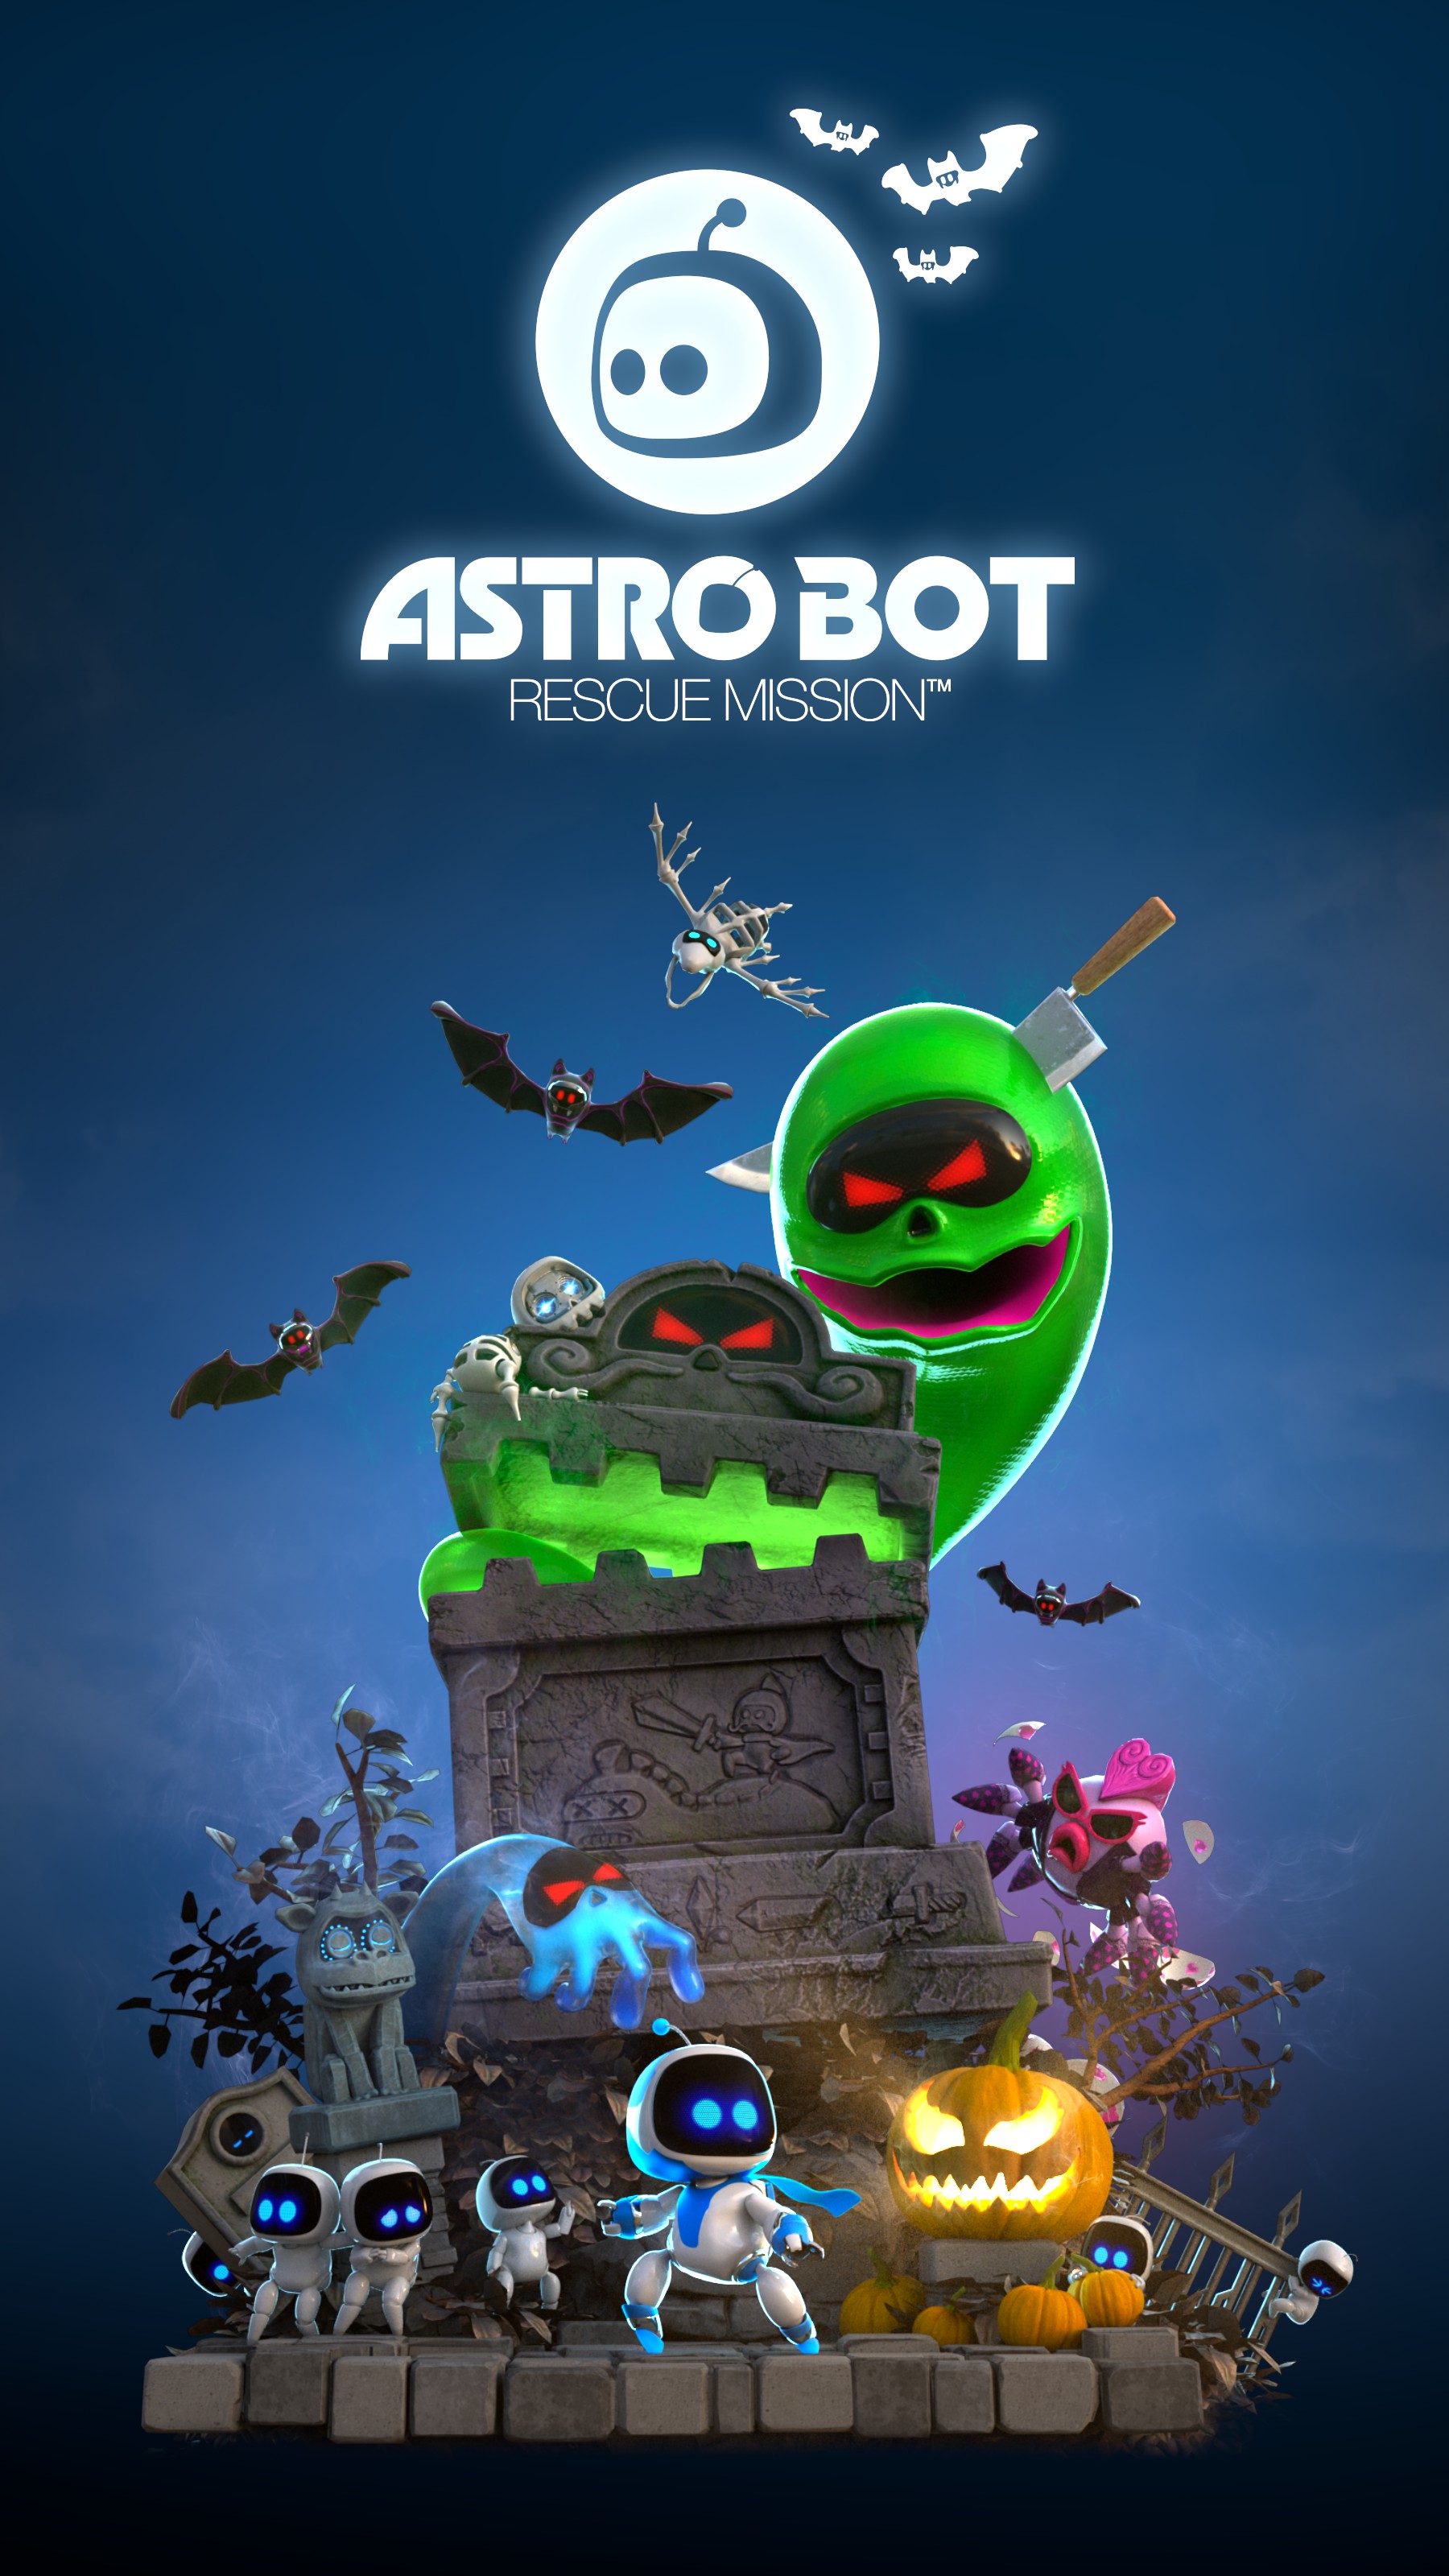 Astro Bot応援大作戦 に寄せられた皆さんからのコメントを一挙公開 Playstation Blog